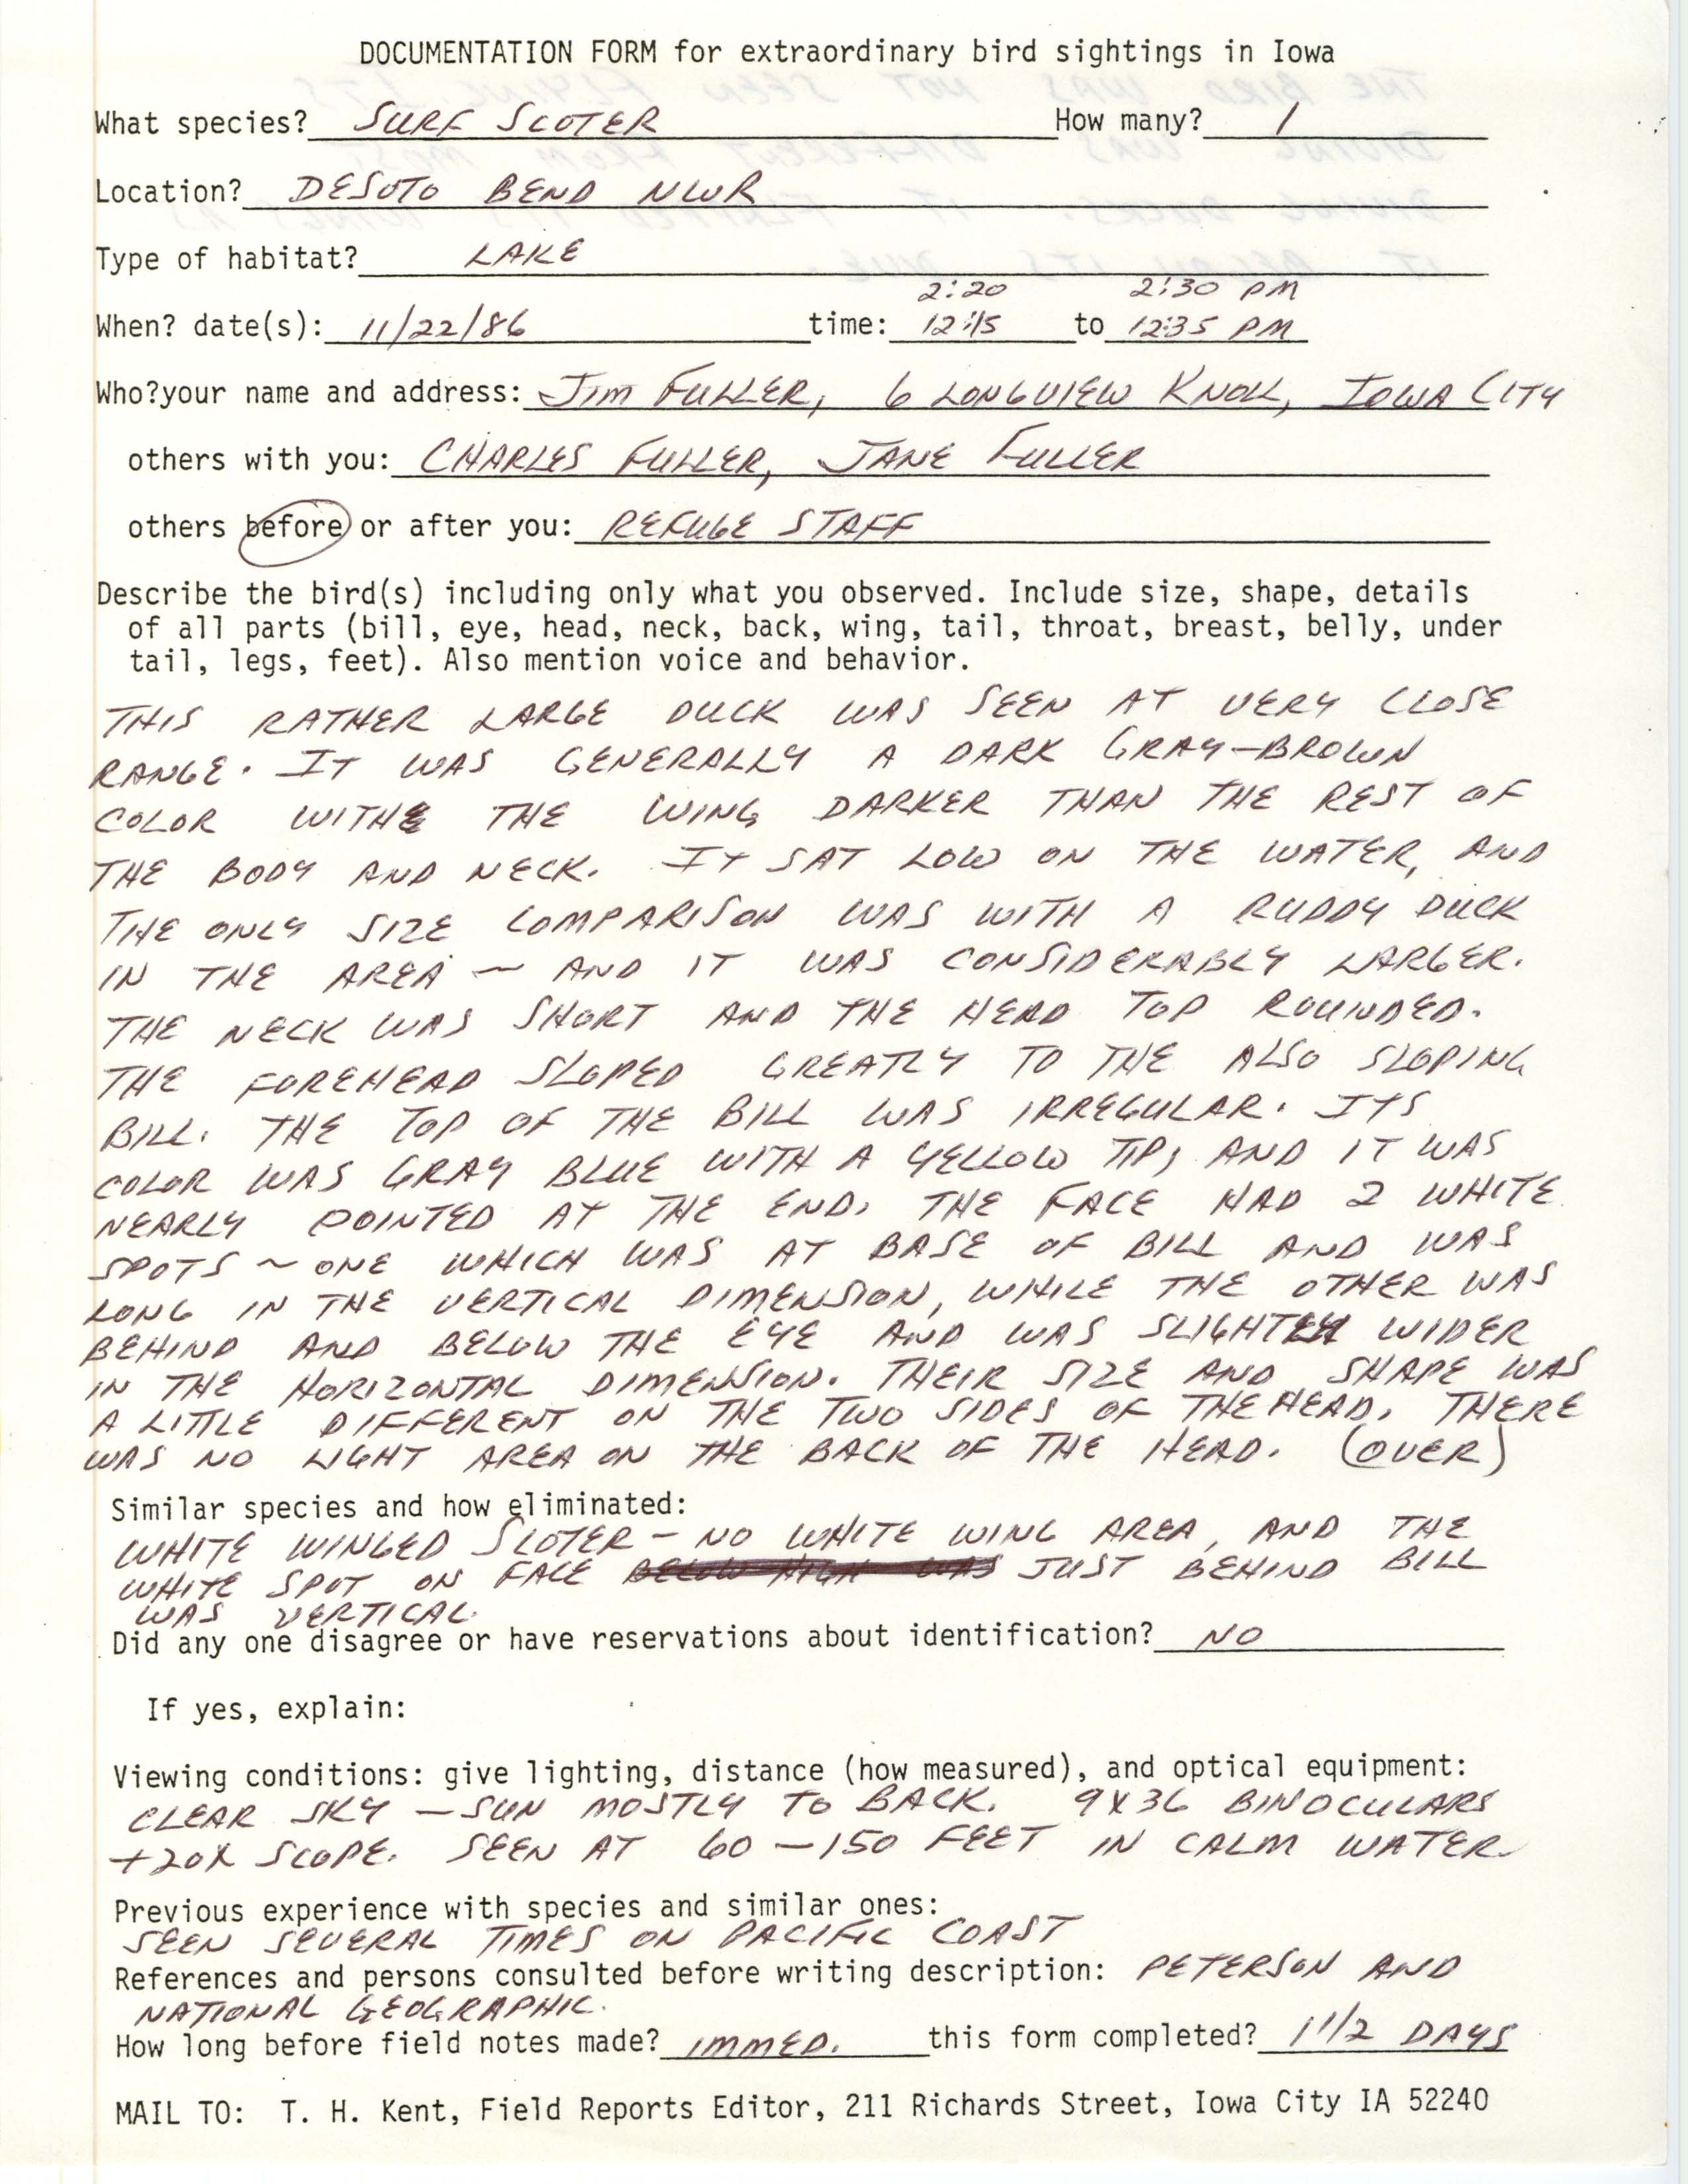 Rare bird documentation form for Surf Scoter at DeSoto Bend National Wildlife Refuge, 1986